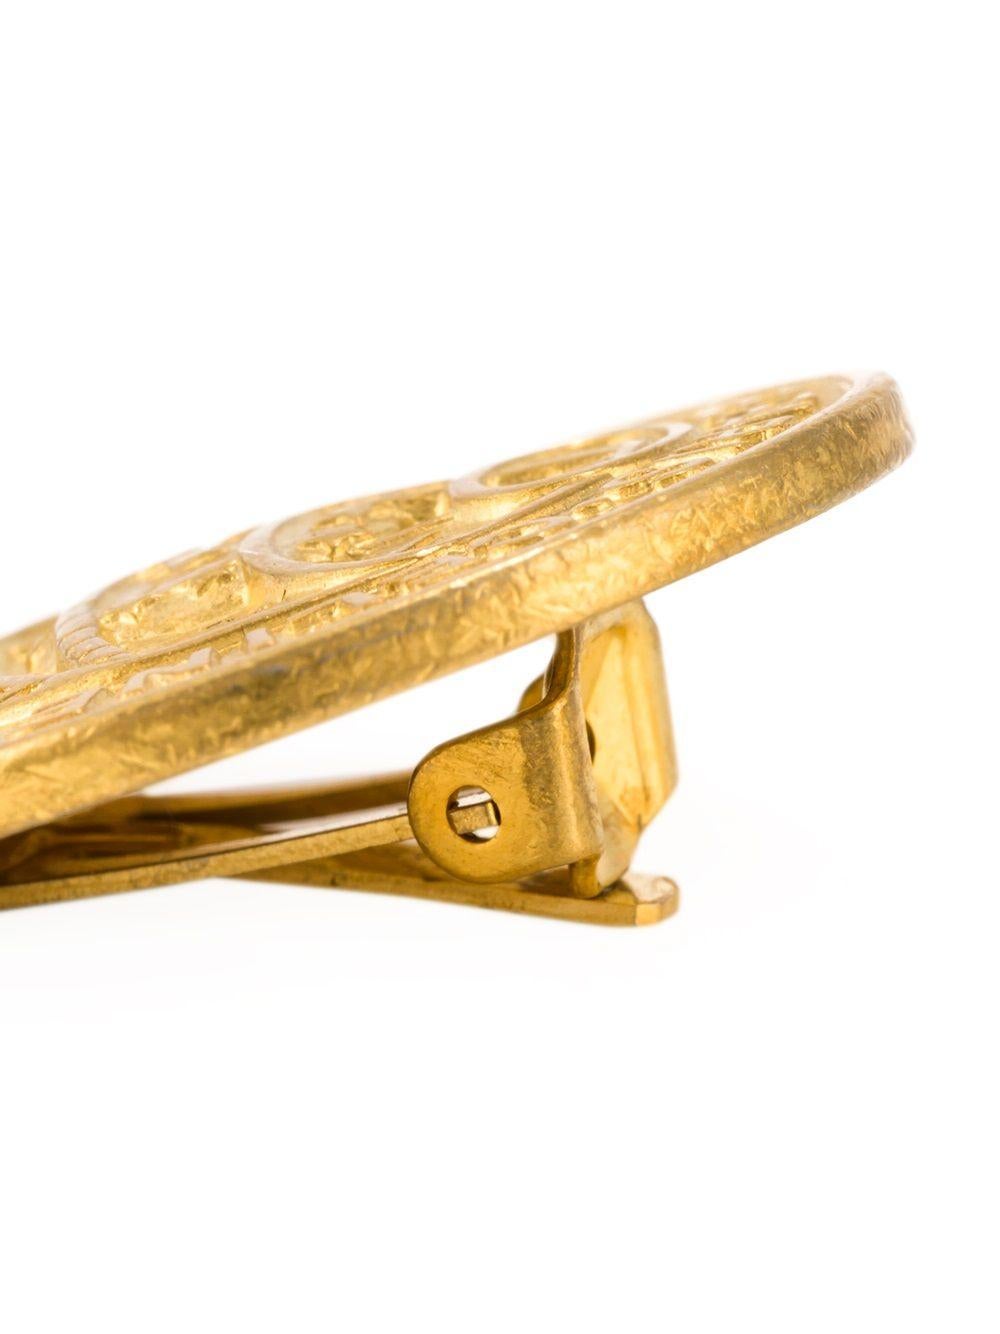 Vintage-Ohrringe mit goldfarbenem Medaillon und Clipverschluss von Céline. 

Farbe: Gold, Perle

Material: Vergoldetes Metall

Abmessungen: Breite: 2,5cm

Zustand: Sehr guter Zustand. 



